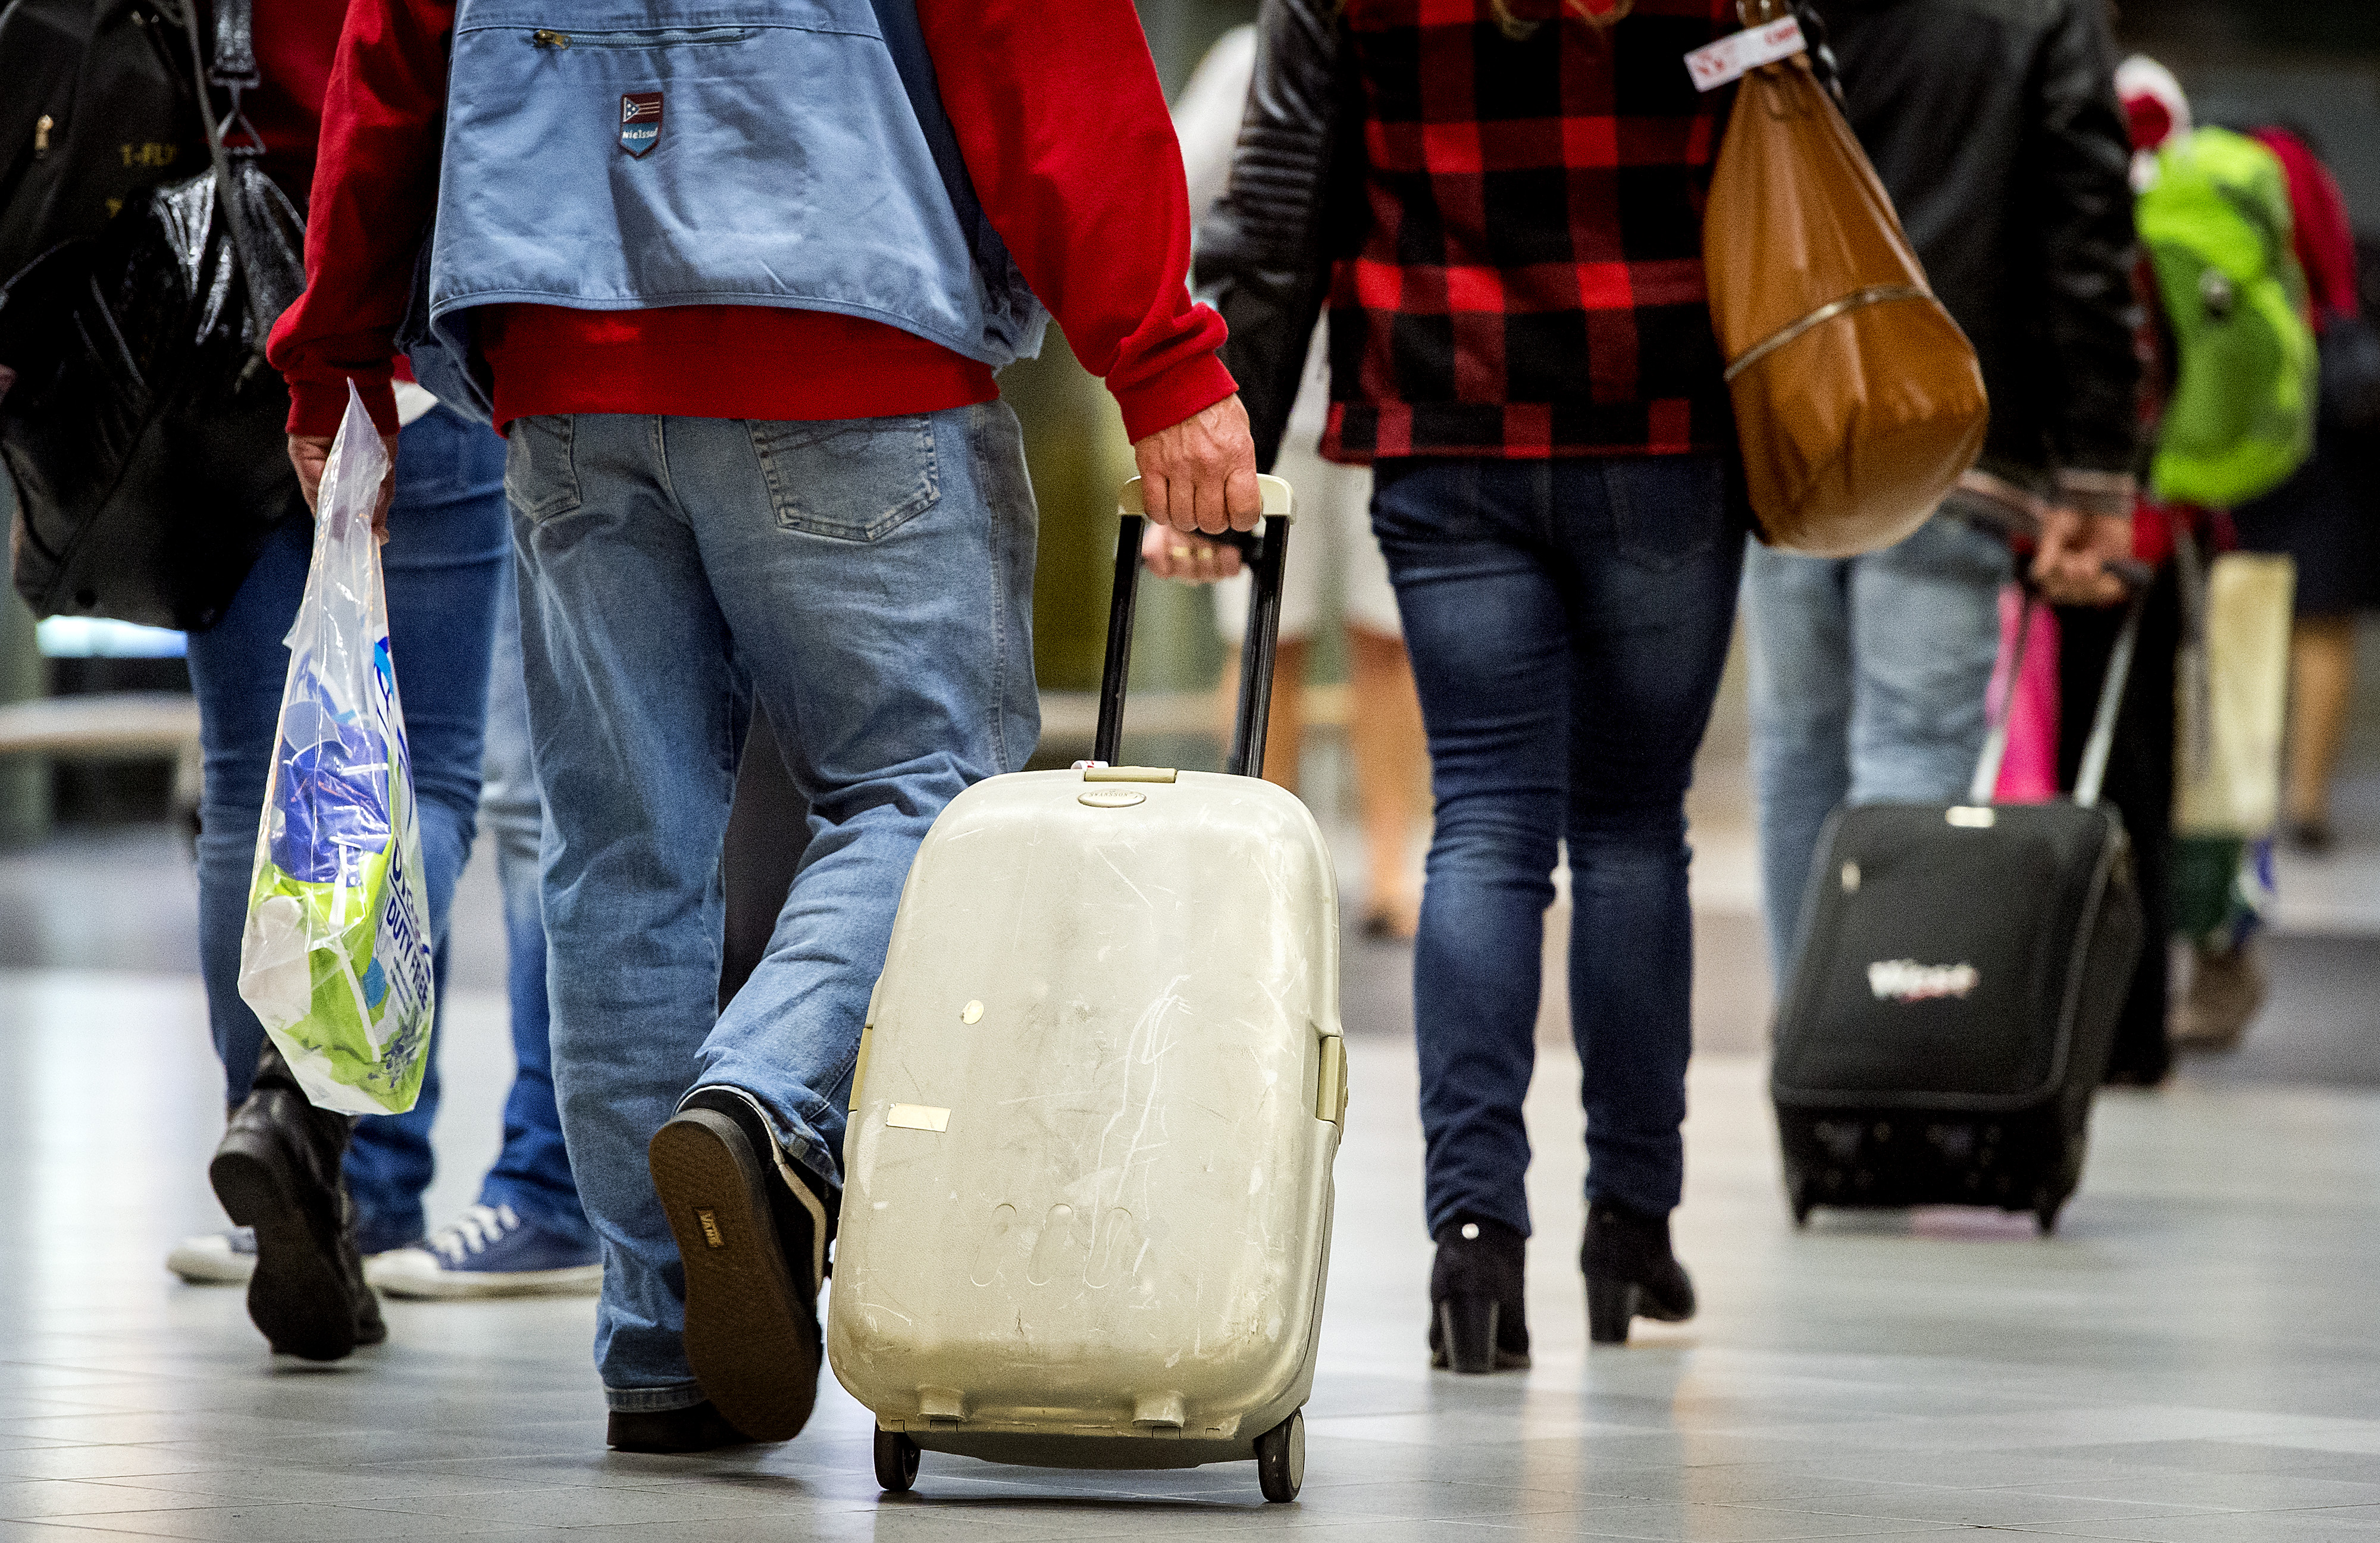 Slecht voor reizigers met rolkoffers als handbagage - ook wil dat gaan betalen